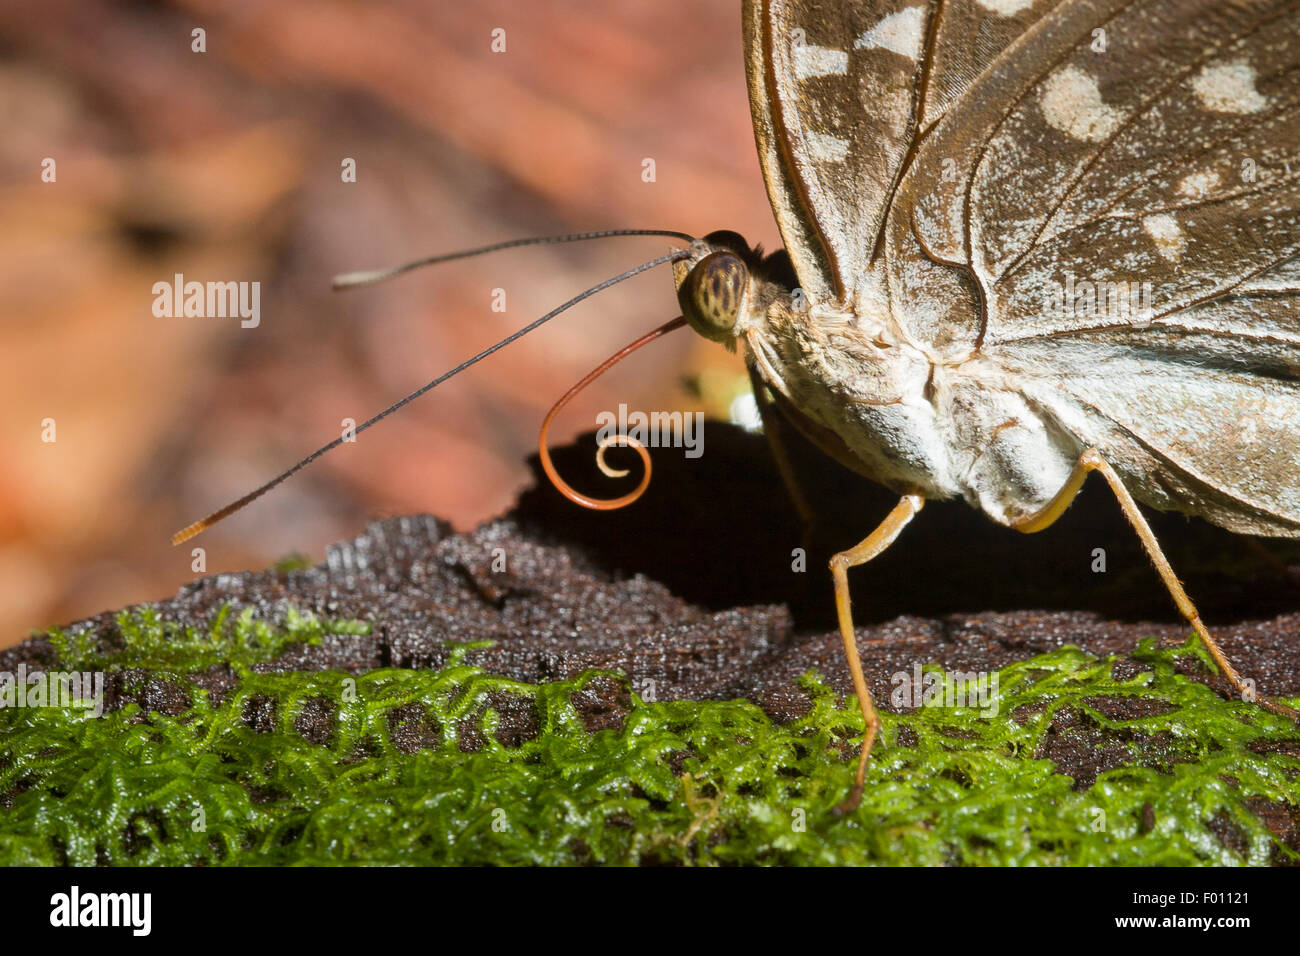 Nahaufnahme von einem Schmetterling Kopf mit Rüssel teilweise entfaltet. Stockfoto